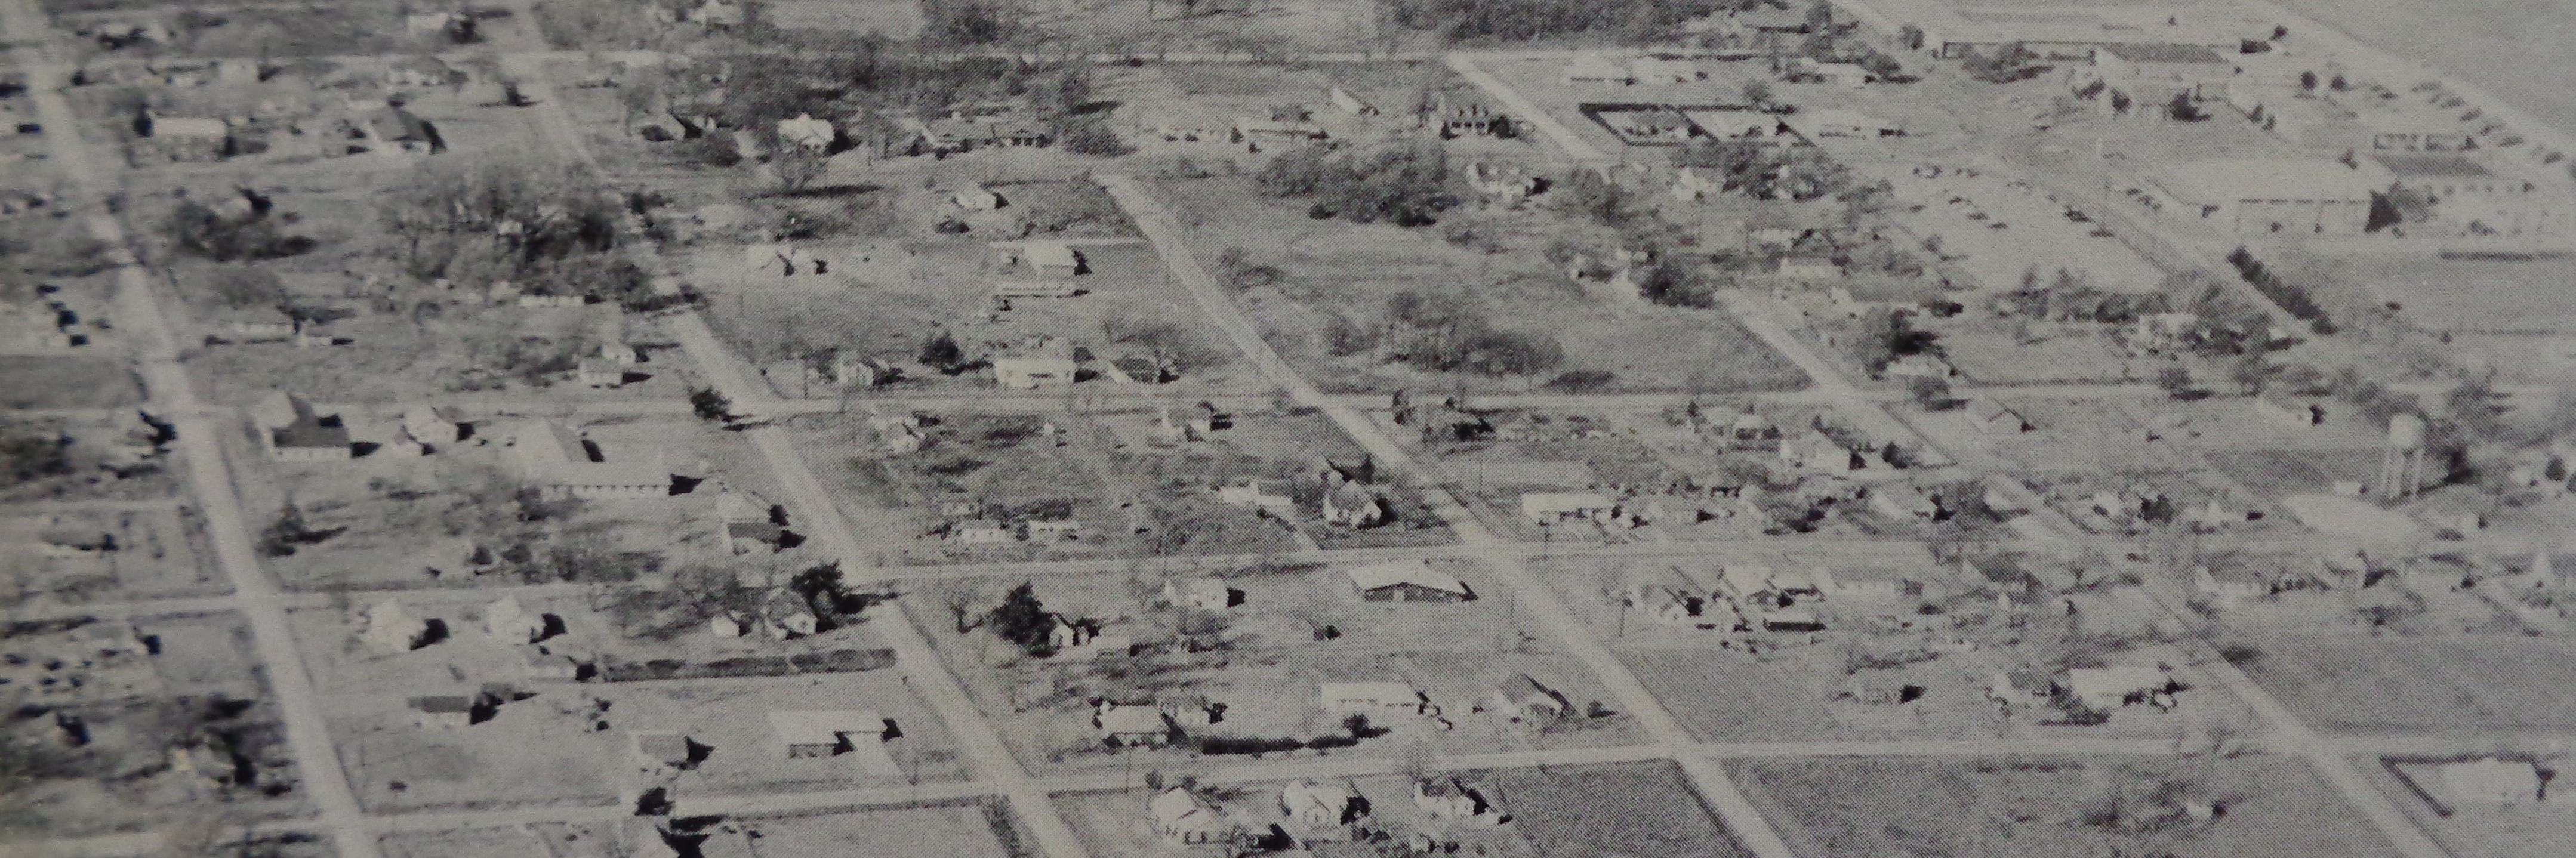 choctaw1963